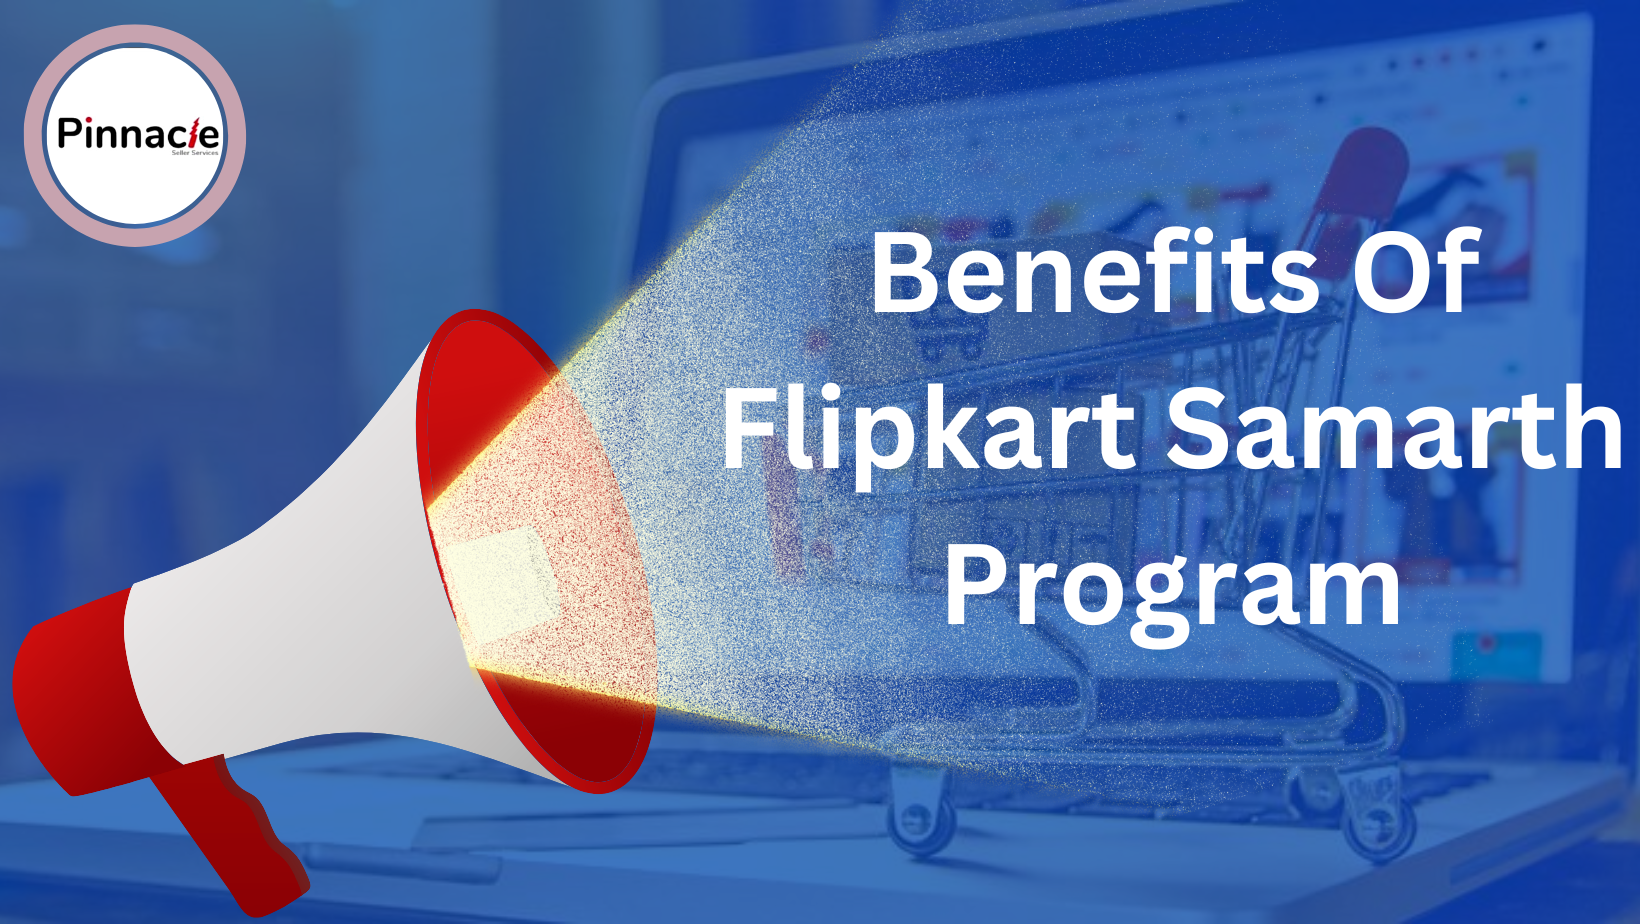 Flipkart Samarth Program